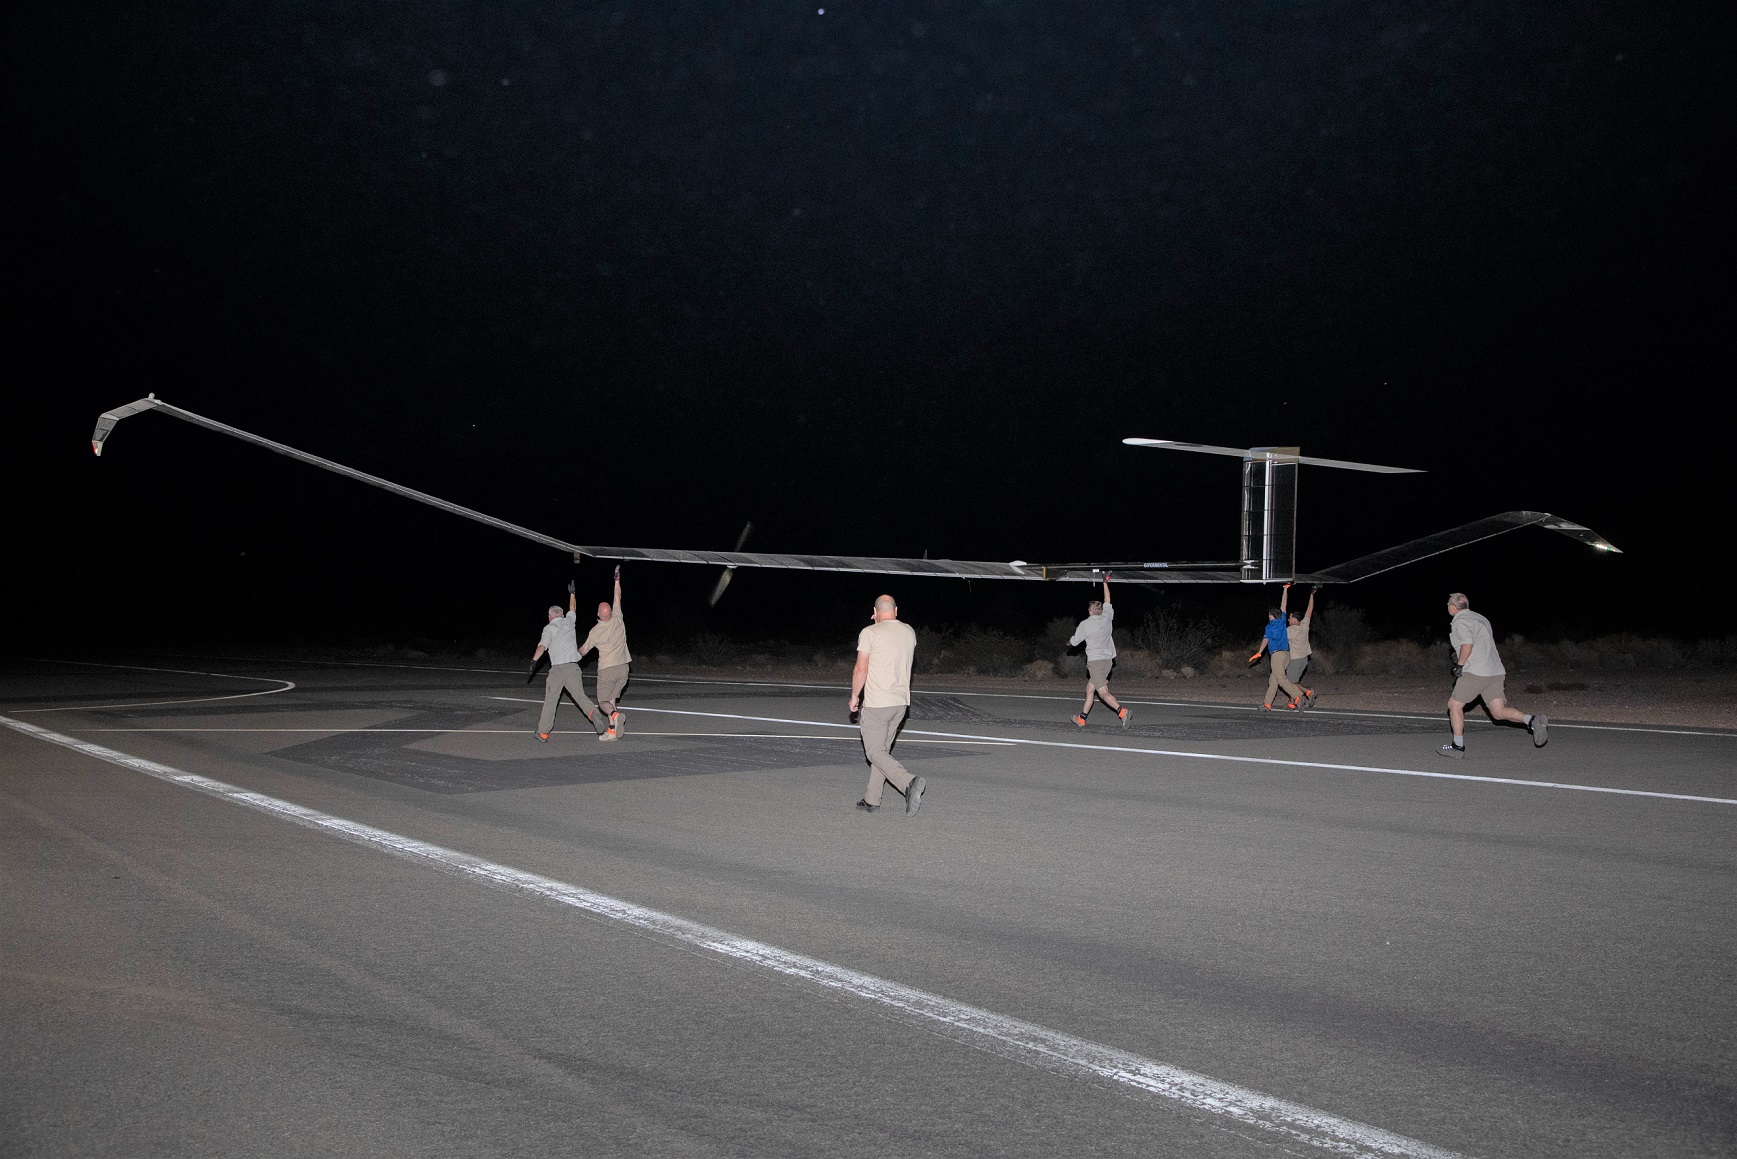 L'esercito americano sta testando un drone stratosferico, ha sorvolato la Terra per 36 giorni